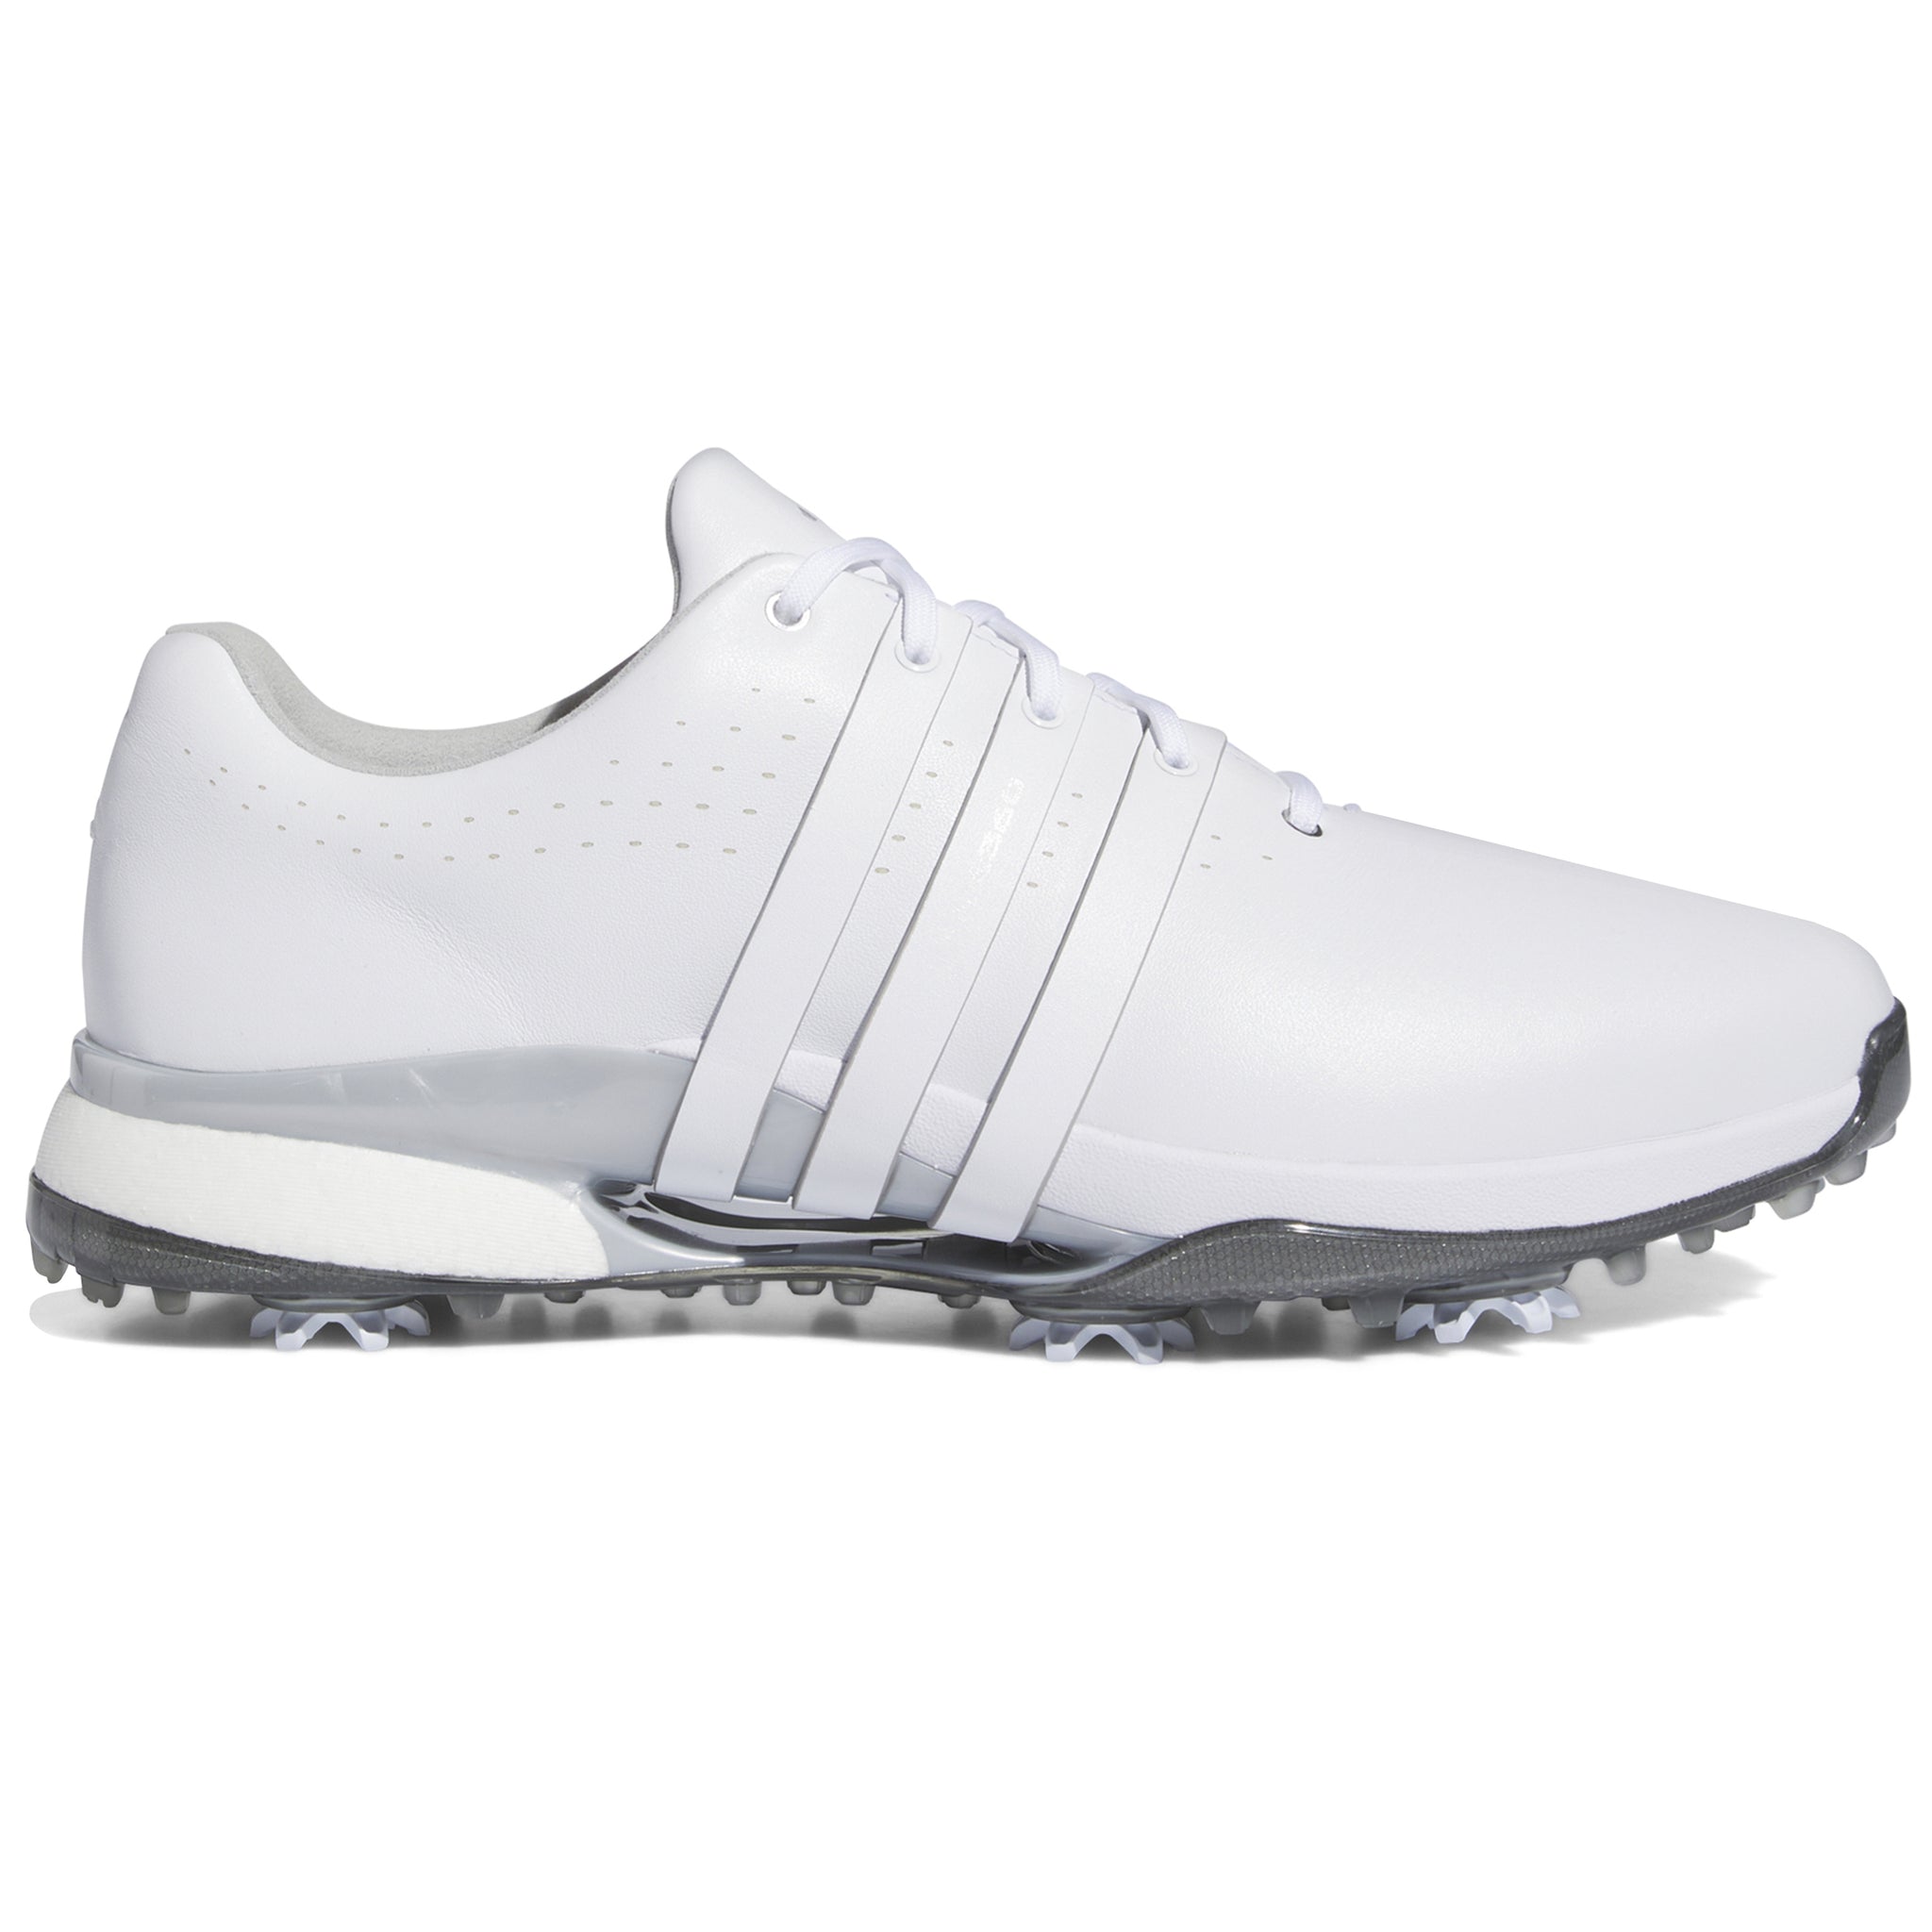 adidas-tour360-24-golf-shoes-if0248-white-silver-metallic